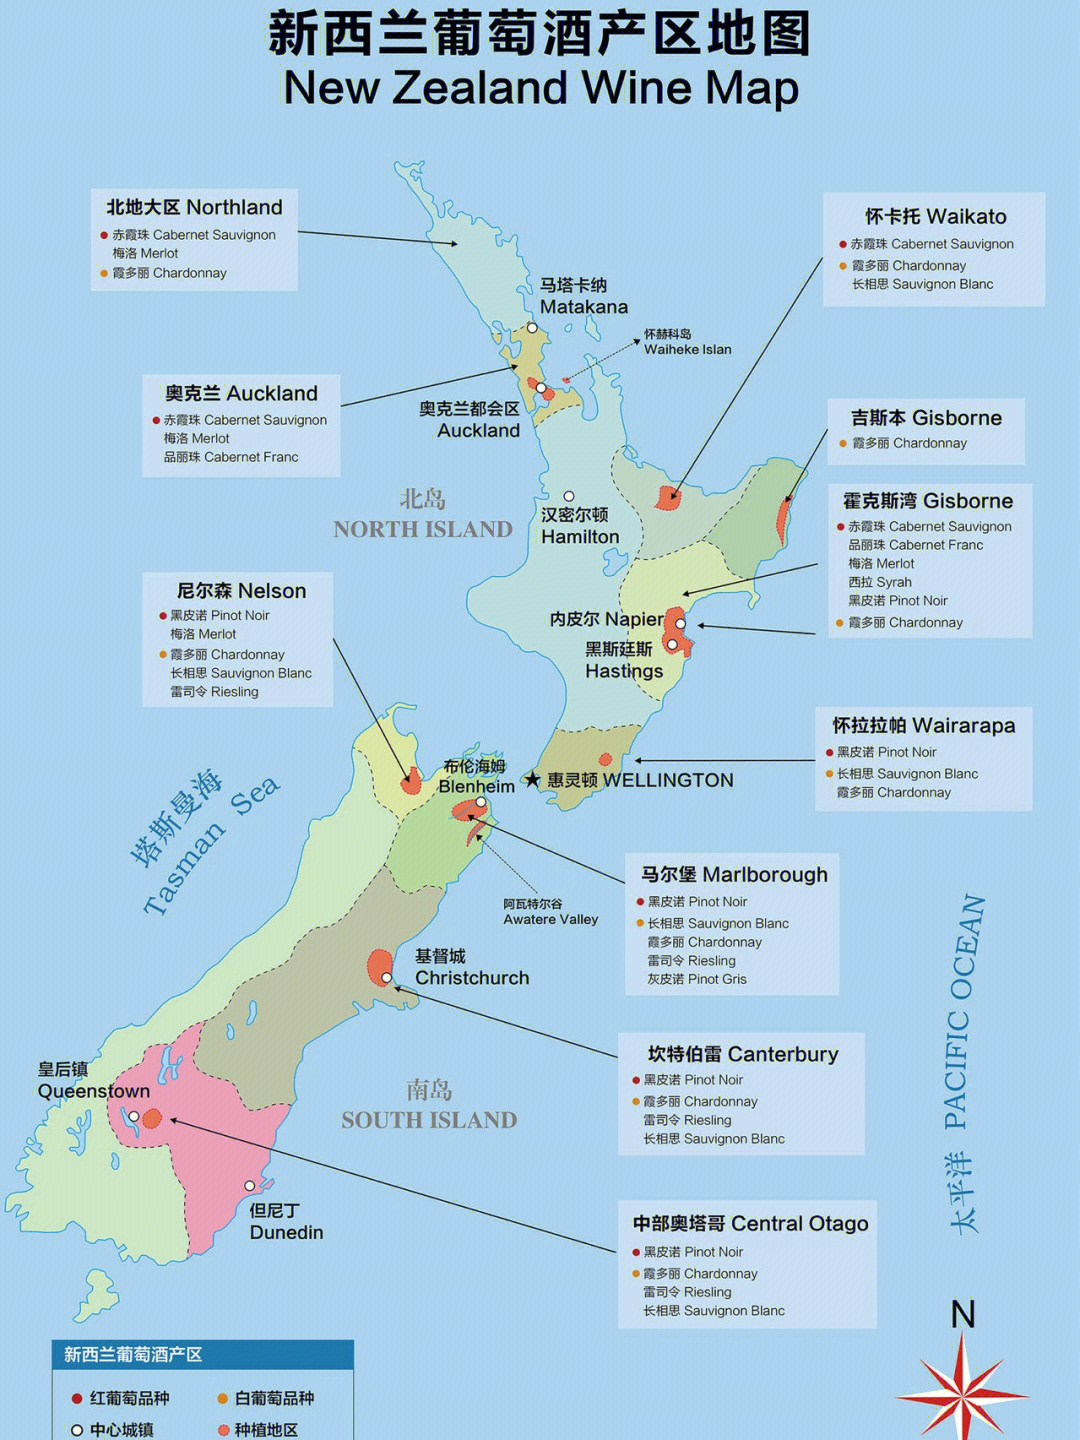 新西兰,以纯净著称的国家,无论美景还是葡萄酒的天然纯净,都是可以